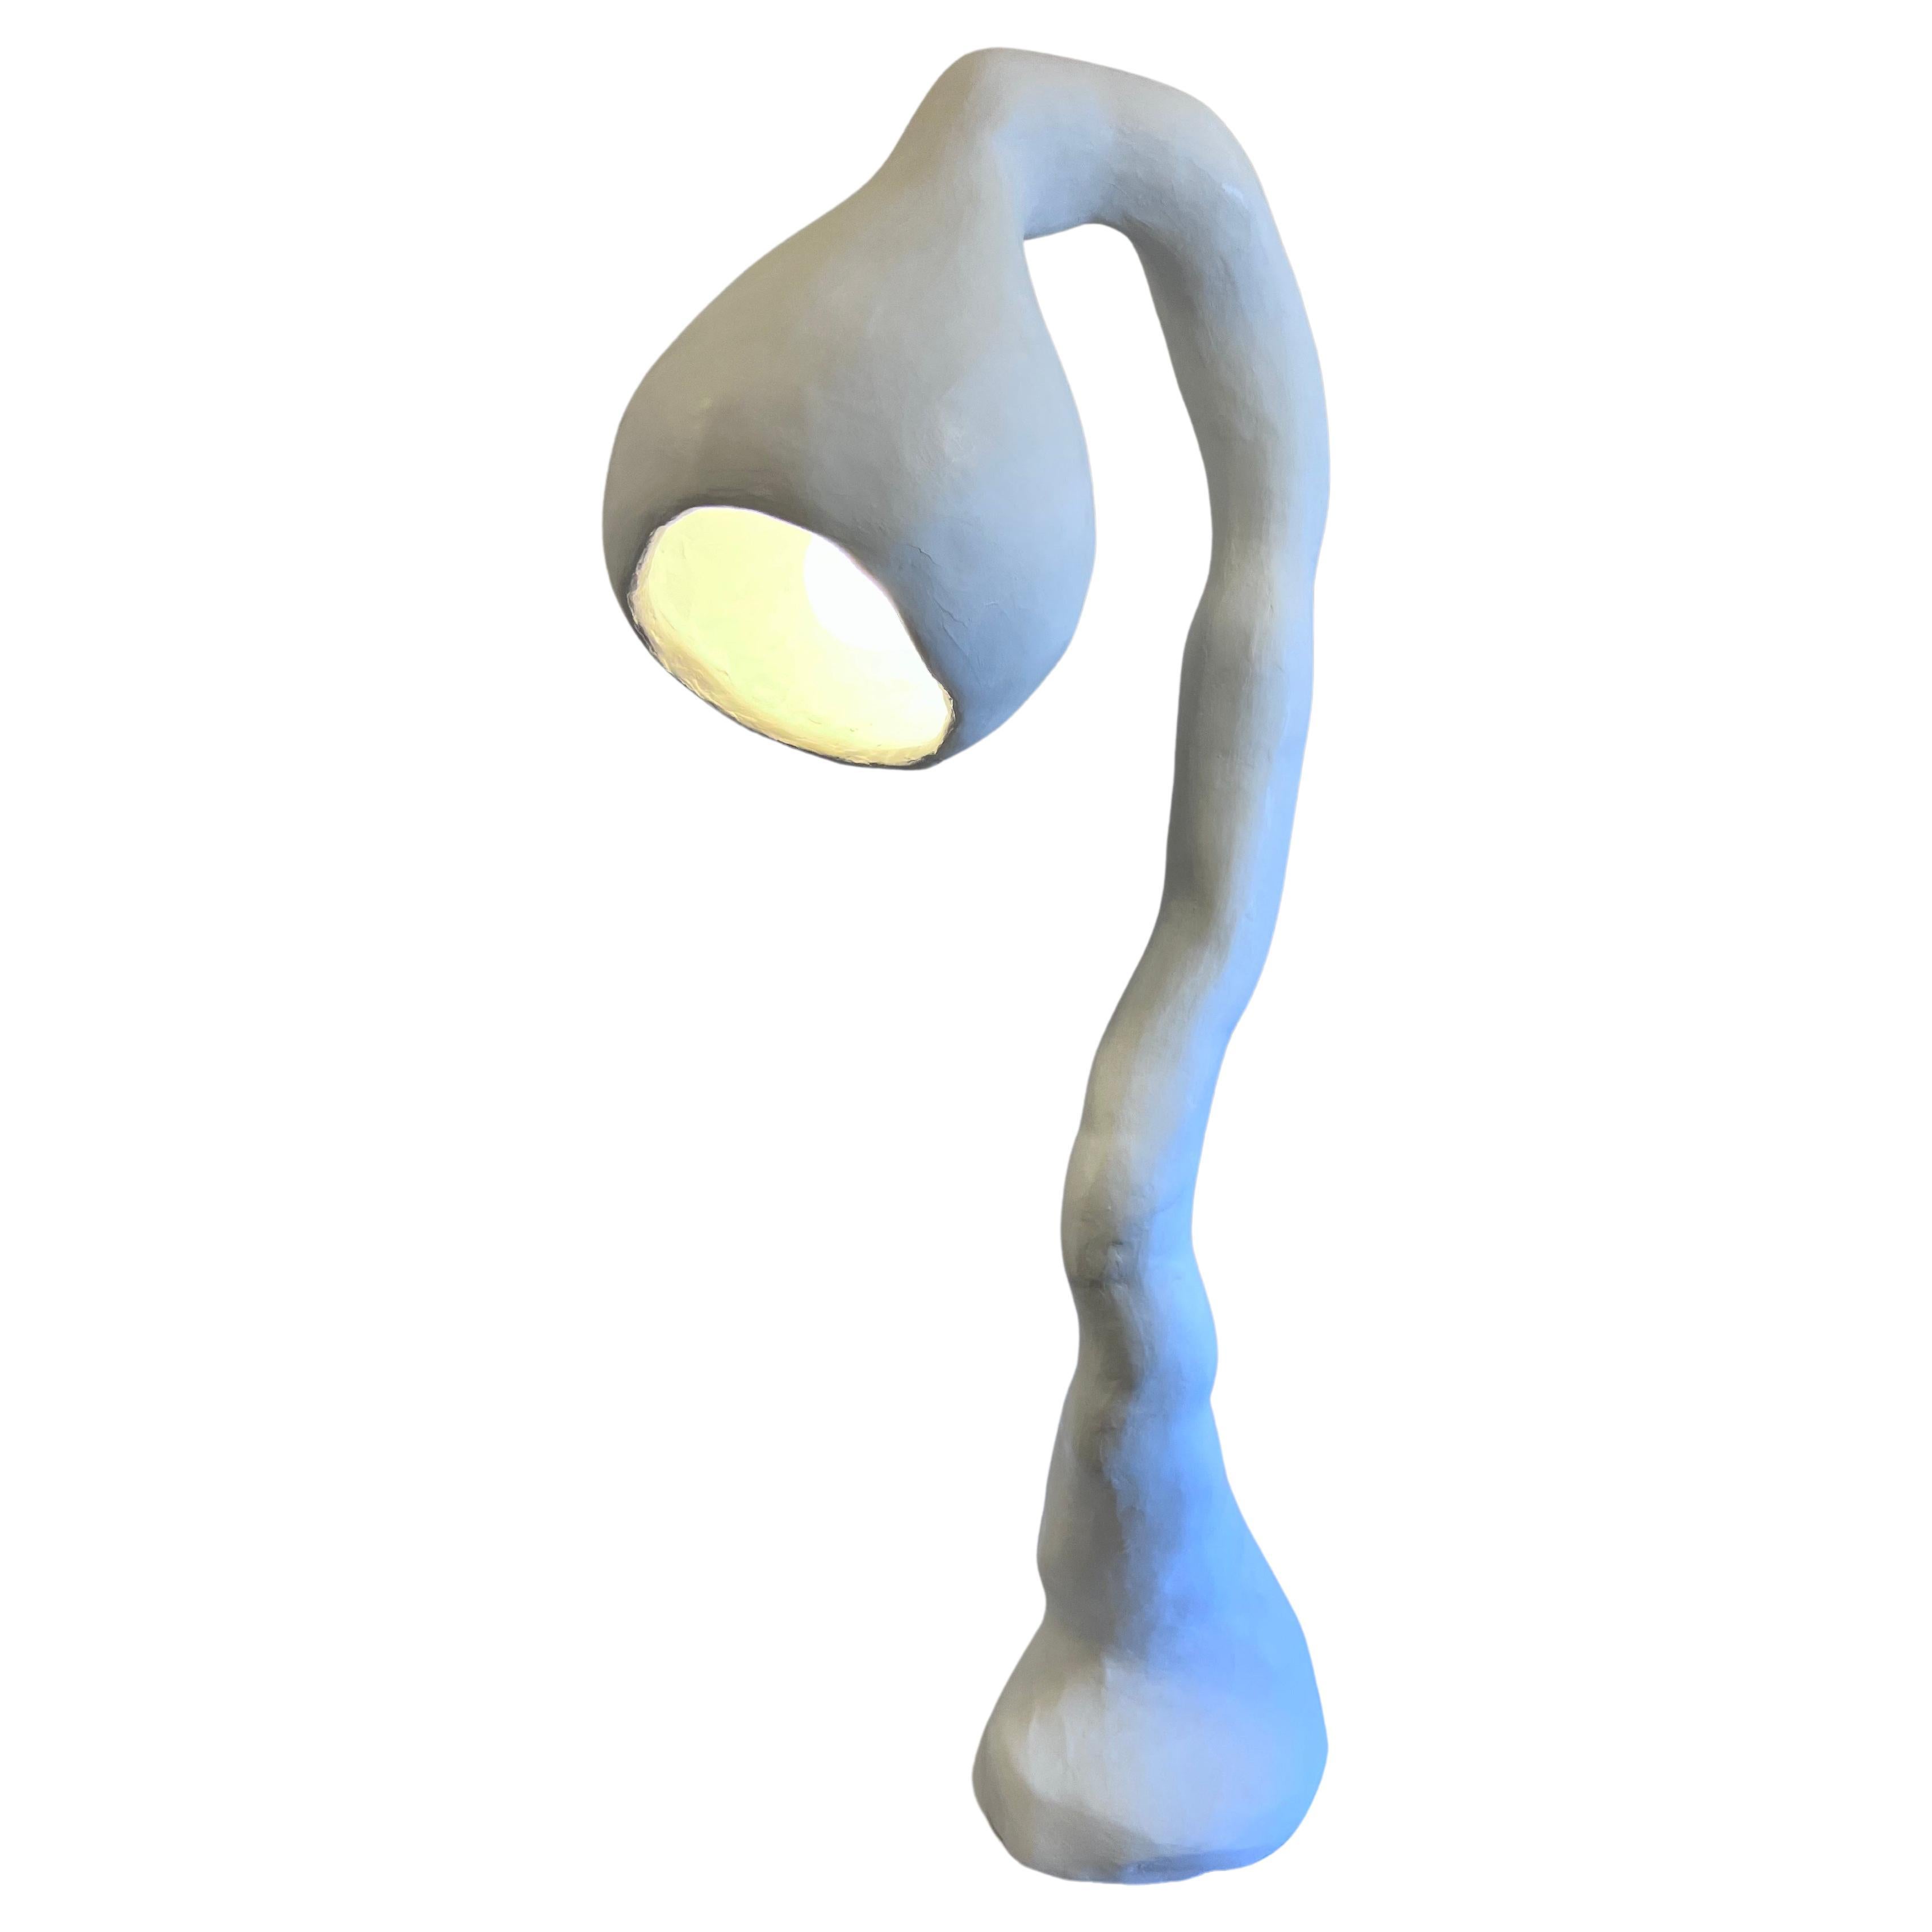 Biomorphe Stehlampe N.4 von Studio Chora, Stehleuchte, weißer Stein, auf Lager